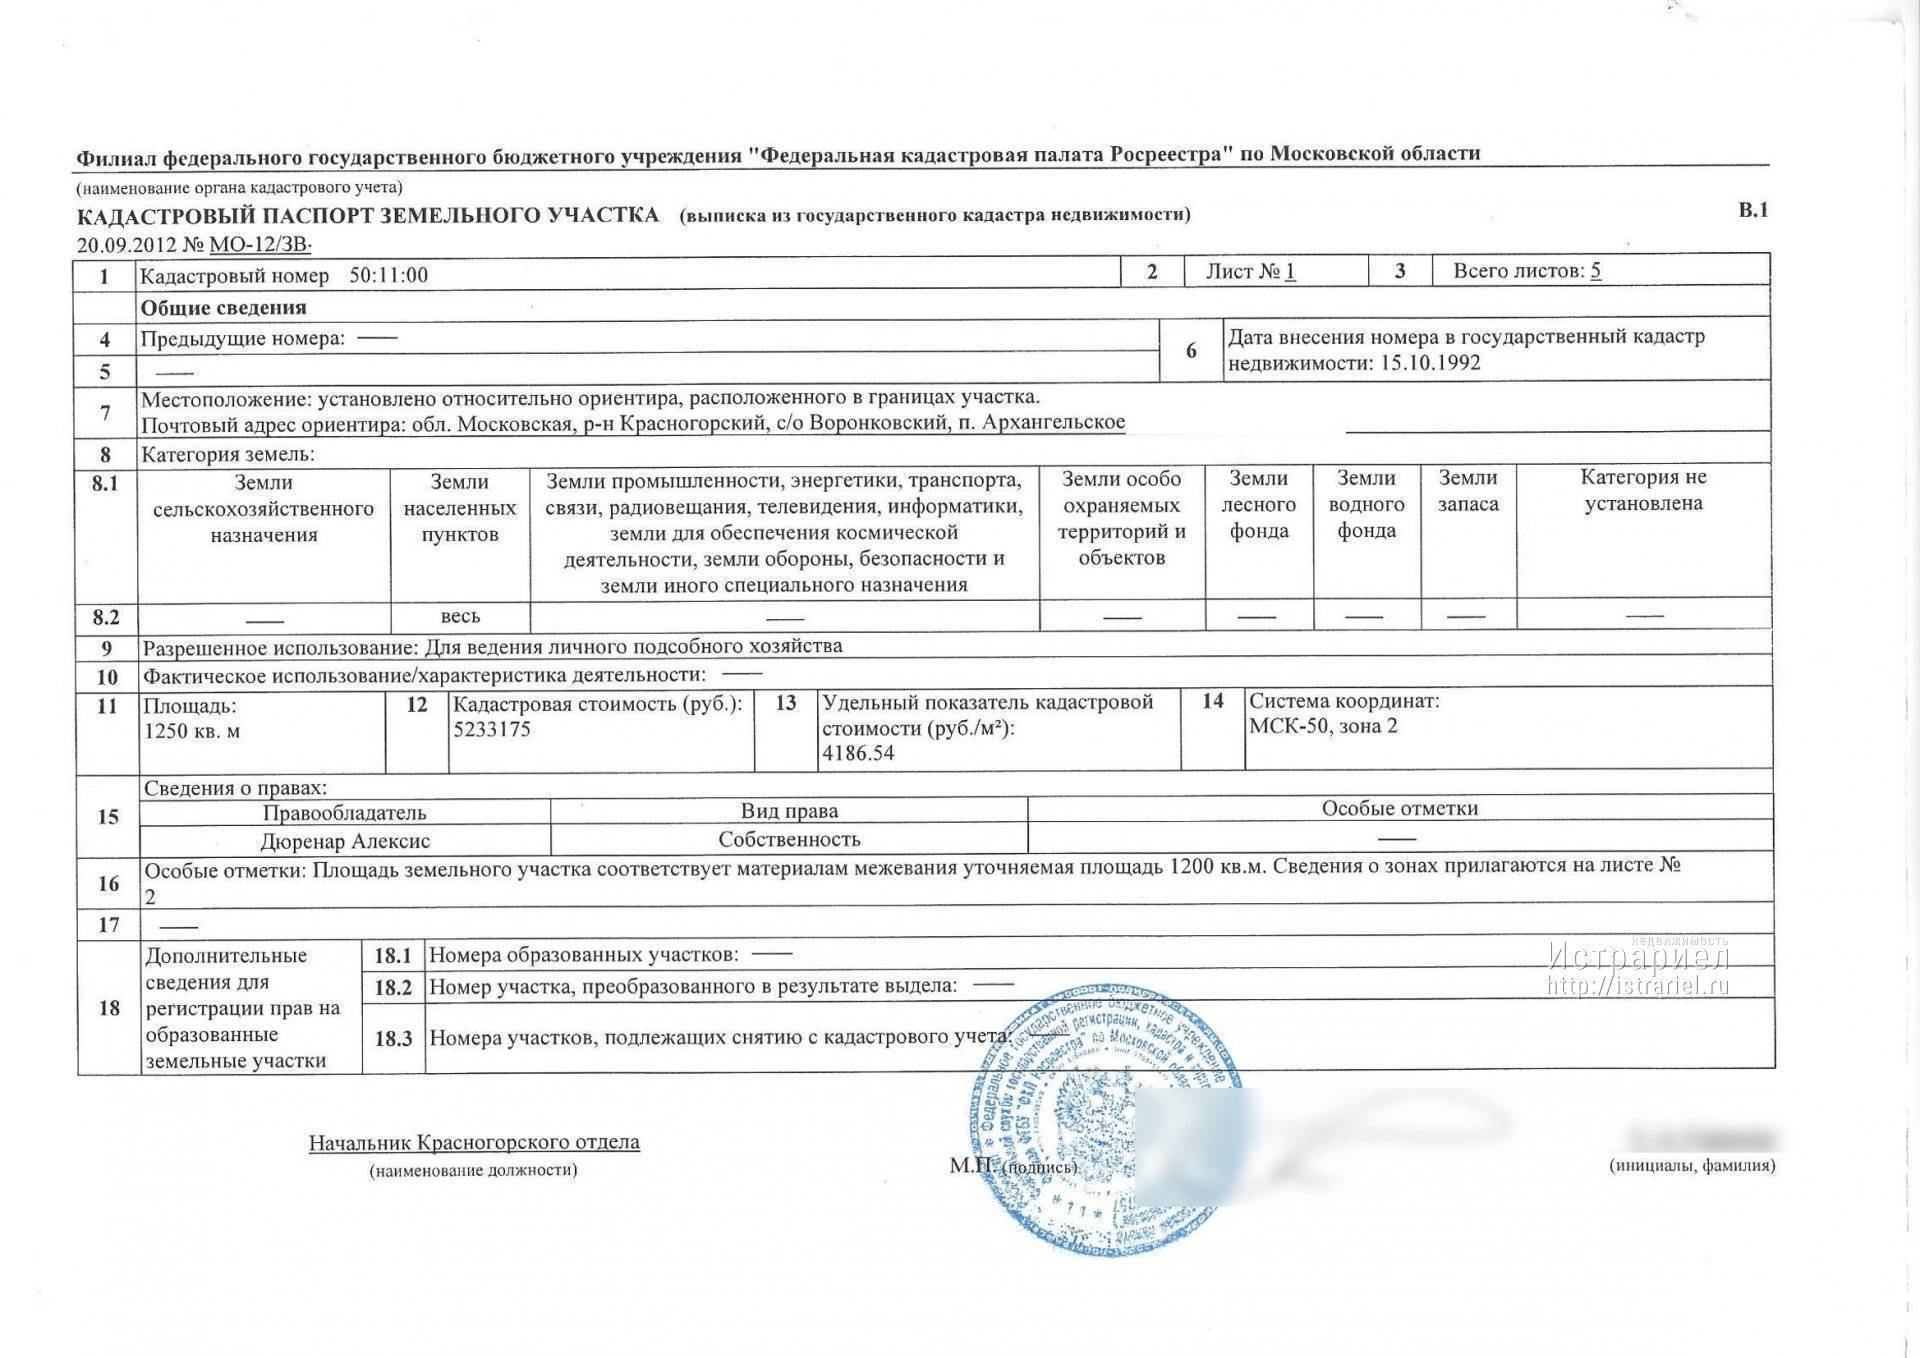 Кадастровый паспорт на дом: порядок оформления, документы, сроки